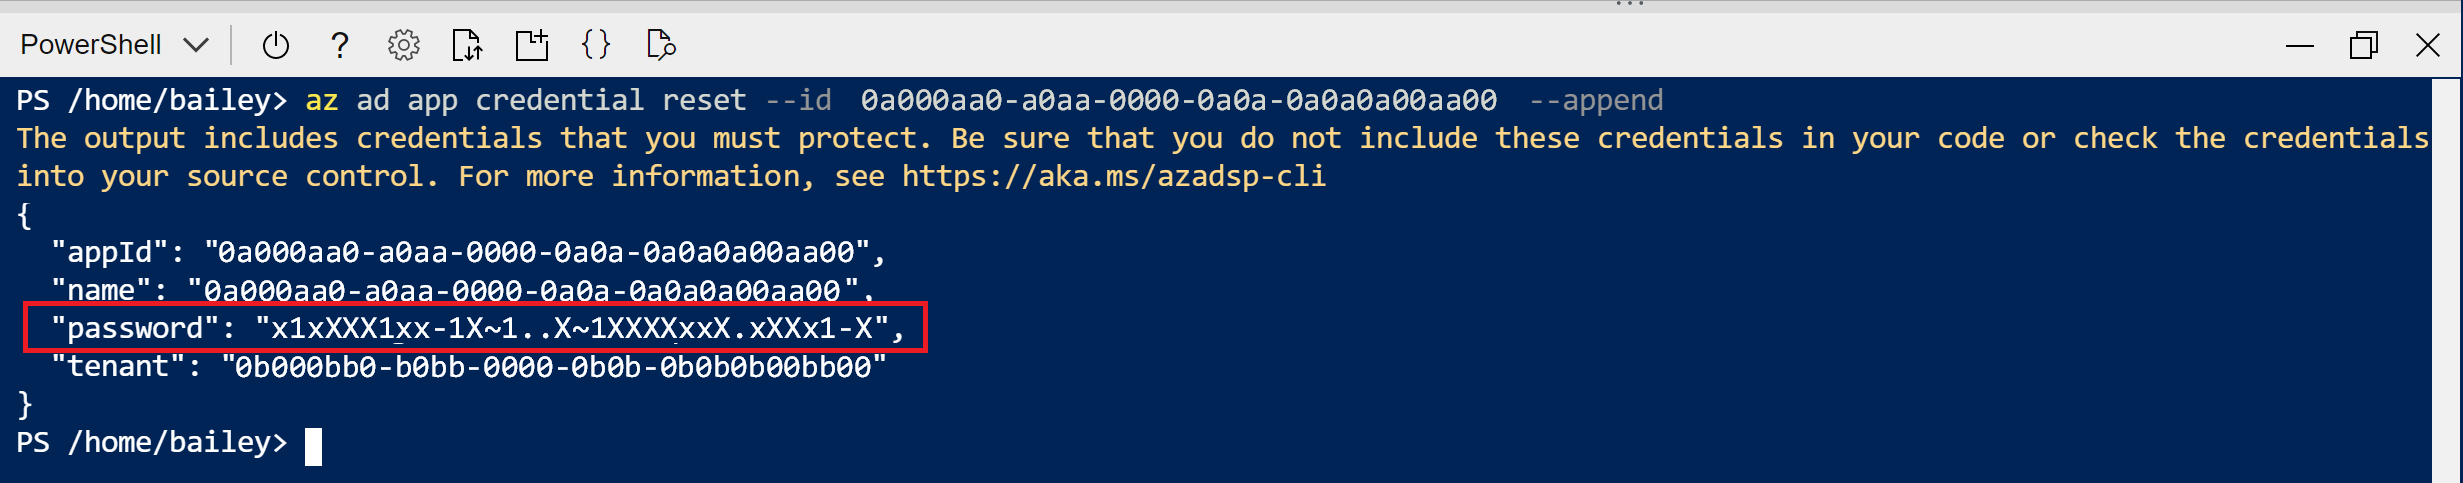 應用程式註冊建立命令的 Cloud Shell 輸出螢幕擷取畫面。密碼值會醒目提示。